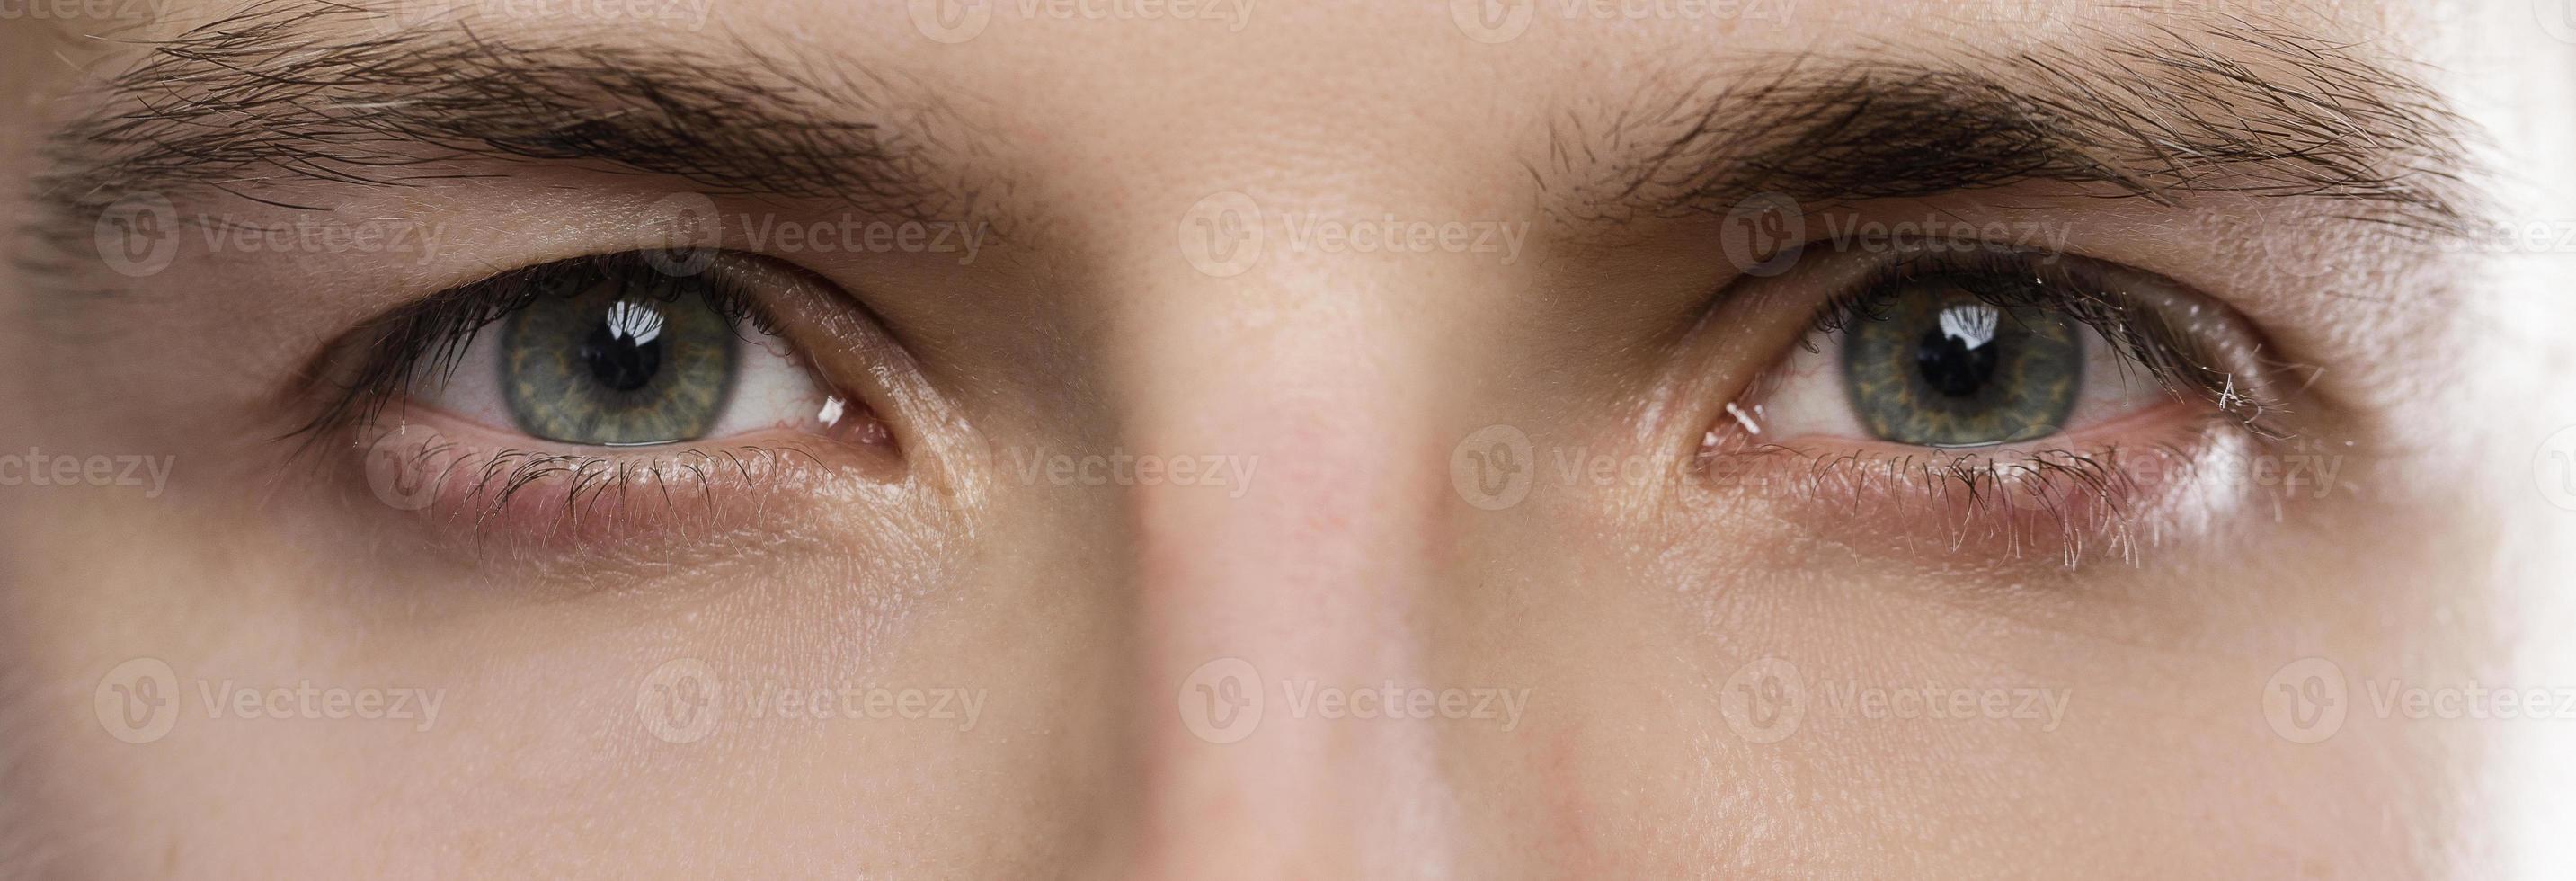 primer plano de hermosos ojos y cejas masculinos foto